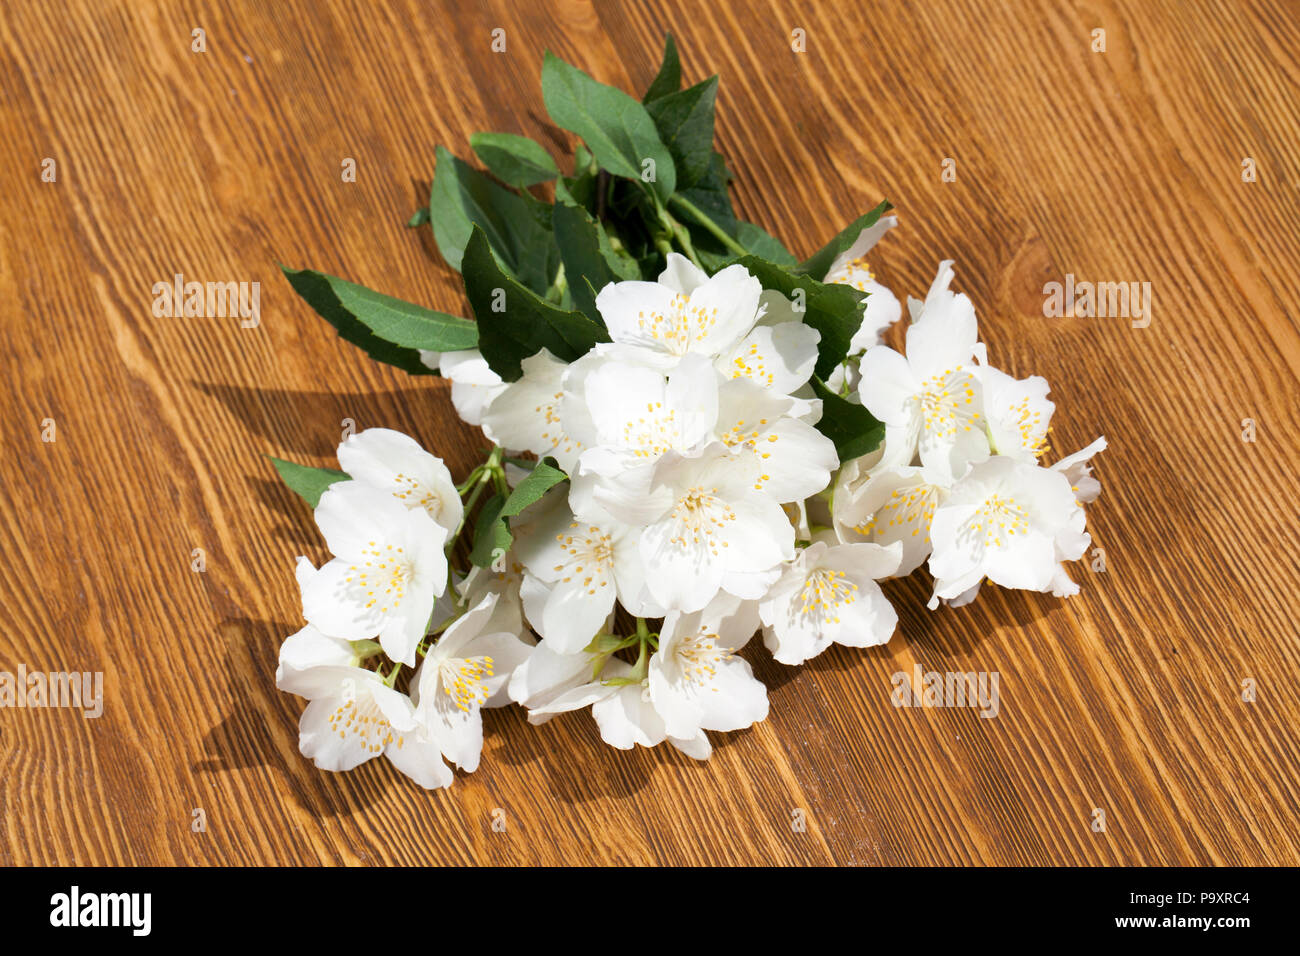 Fragrantly piacevolmente profumati fiori di gelsomino, impilati insieme su una tavola di legno, molla Foto Stock